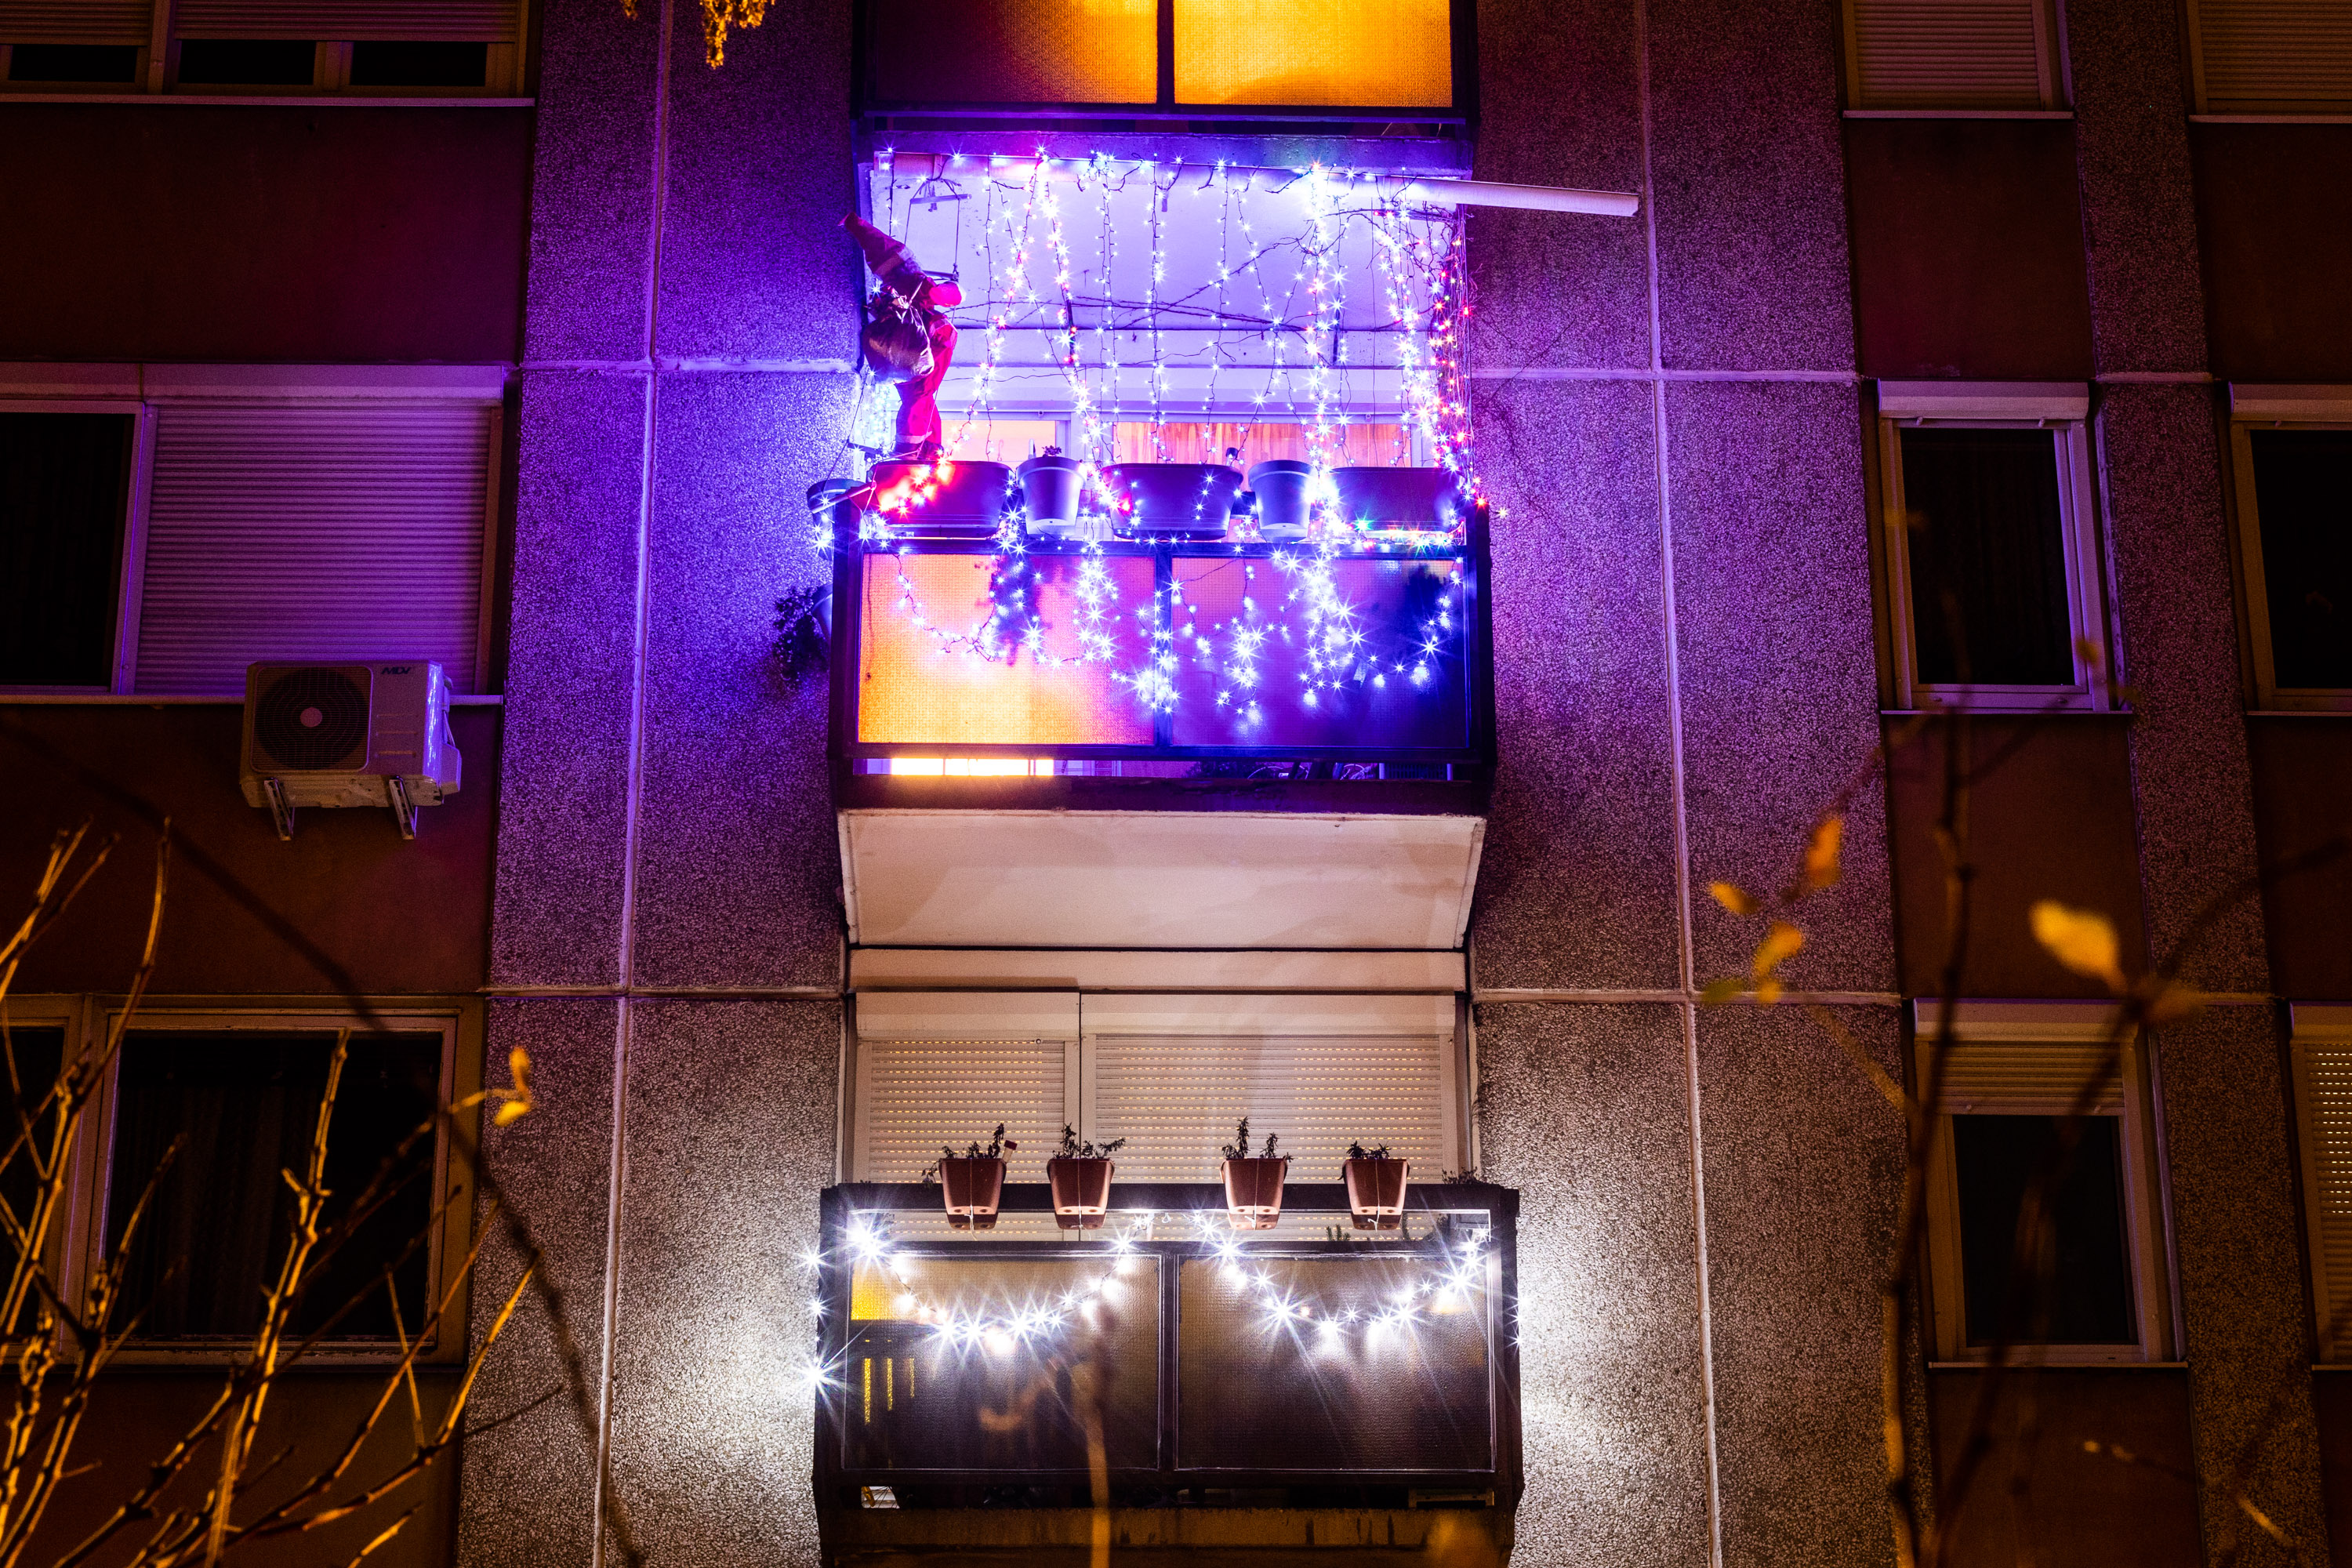 A szerény adventi várakozástól a rave partyt idéző villódzásig – Budapesti ablakok karácsonyra hangolva 